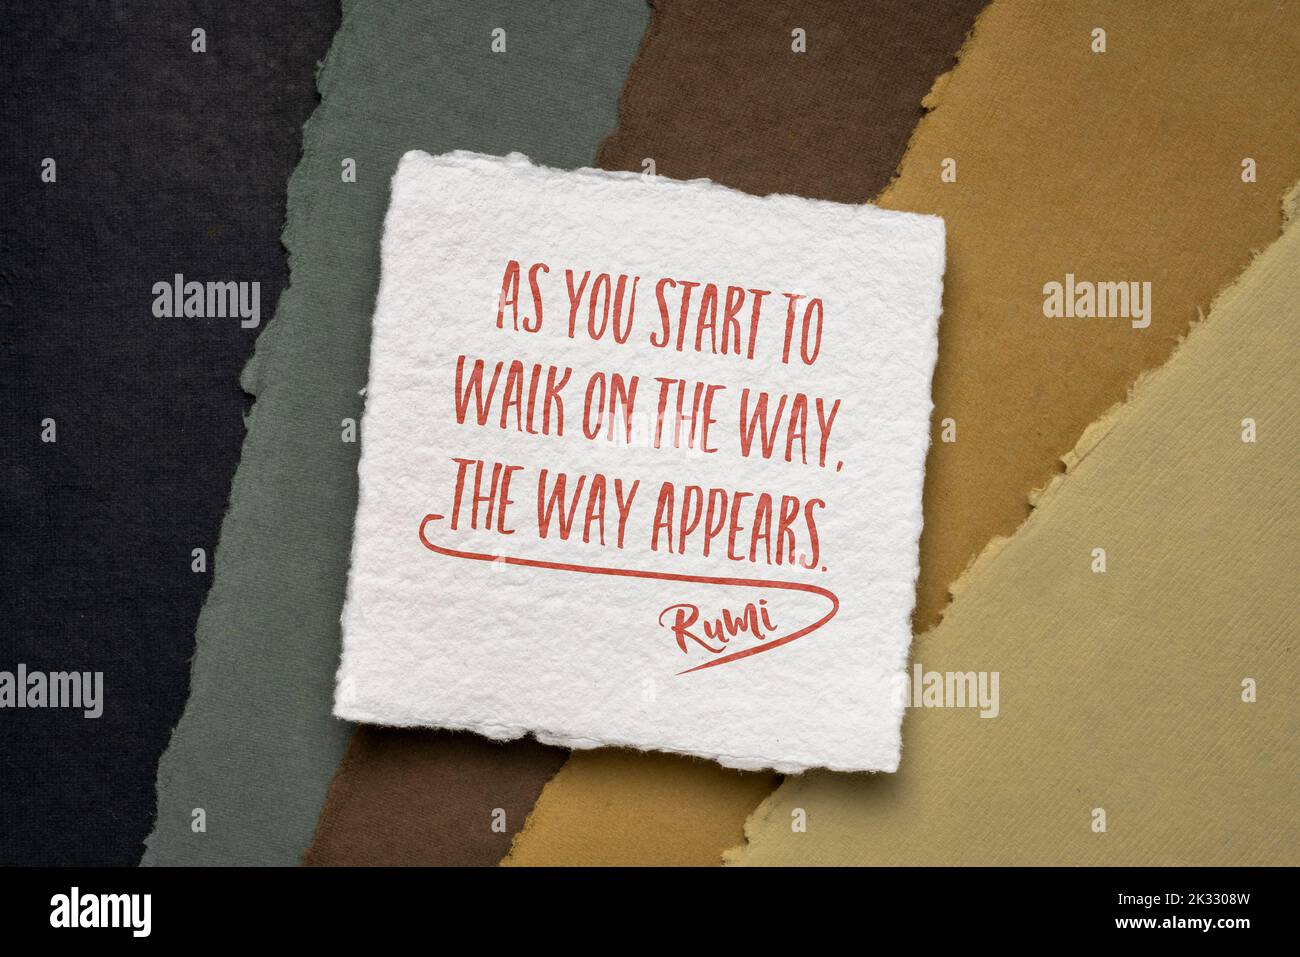 Comme vous commencez à marcher sur le chemin, le chemin apparaît - citation de Rumi sur une feuille carrée de papier de Khadi contre l'abstrait dans les couleurs de la terre Banque D'Images